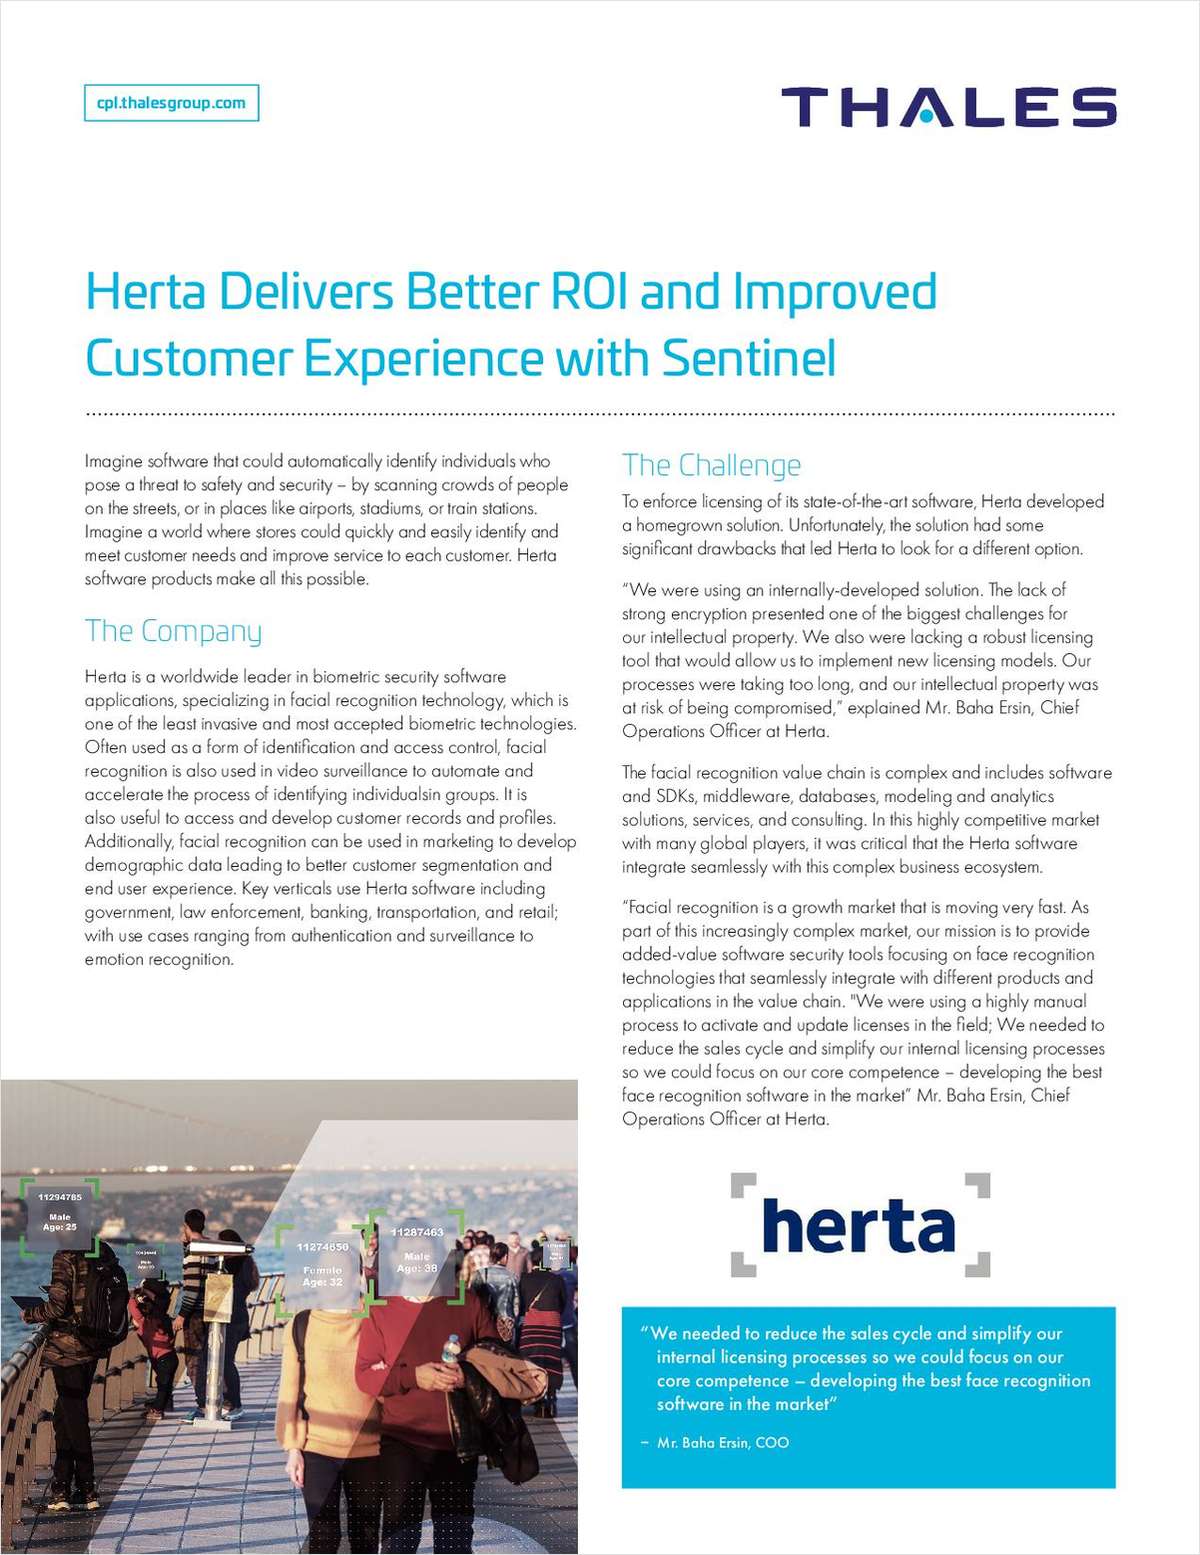 HERTA Security protège sa propriété intellectuelle, chiffre ses données et crée de nouveaux modèles de revenus en remplaçant son système de distribution de licences conçu en interne par Thales